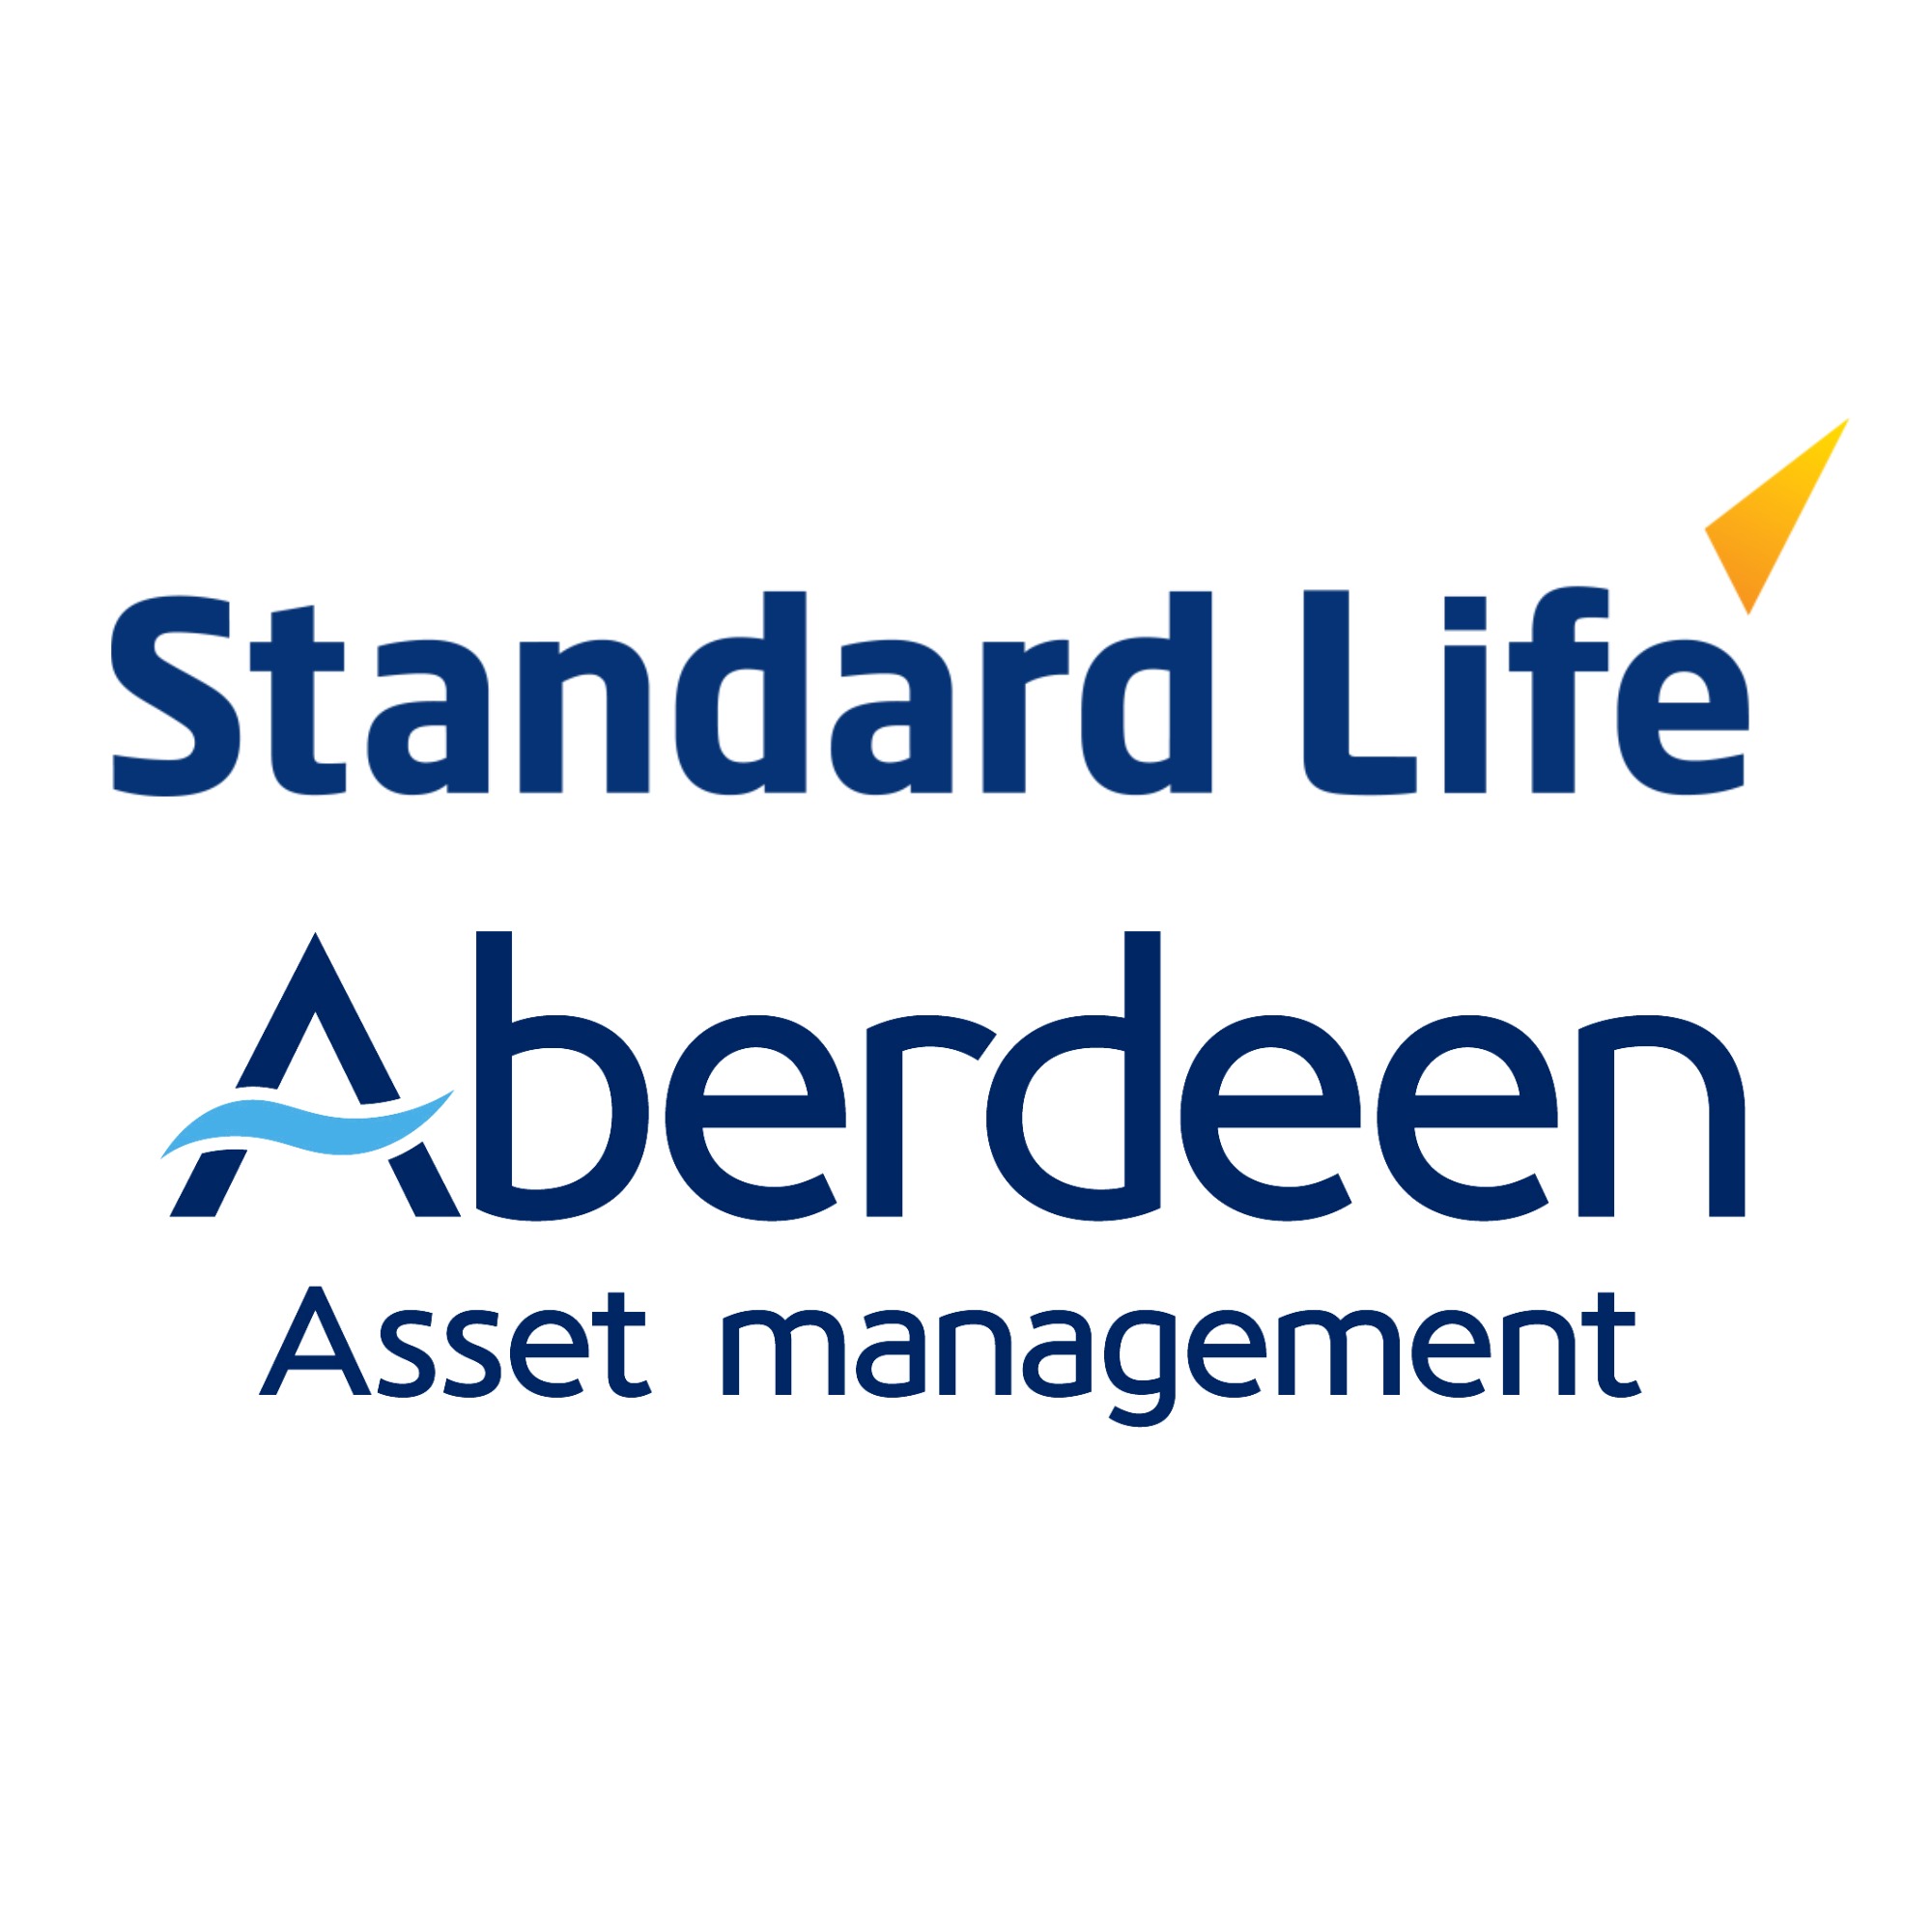 Standard Life & Aberdeen Asset Management Merger Announced
